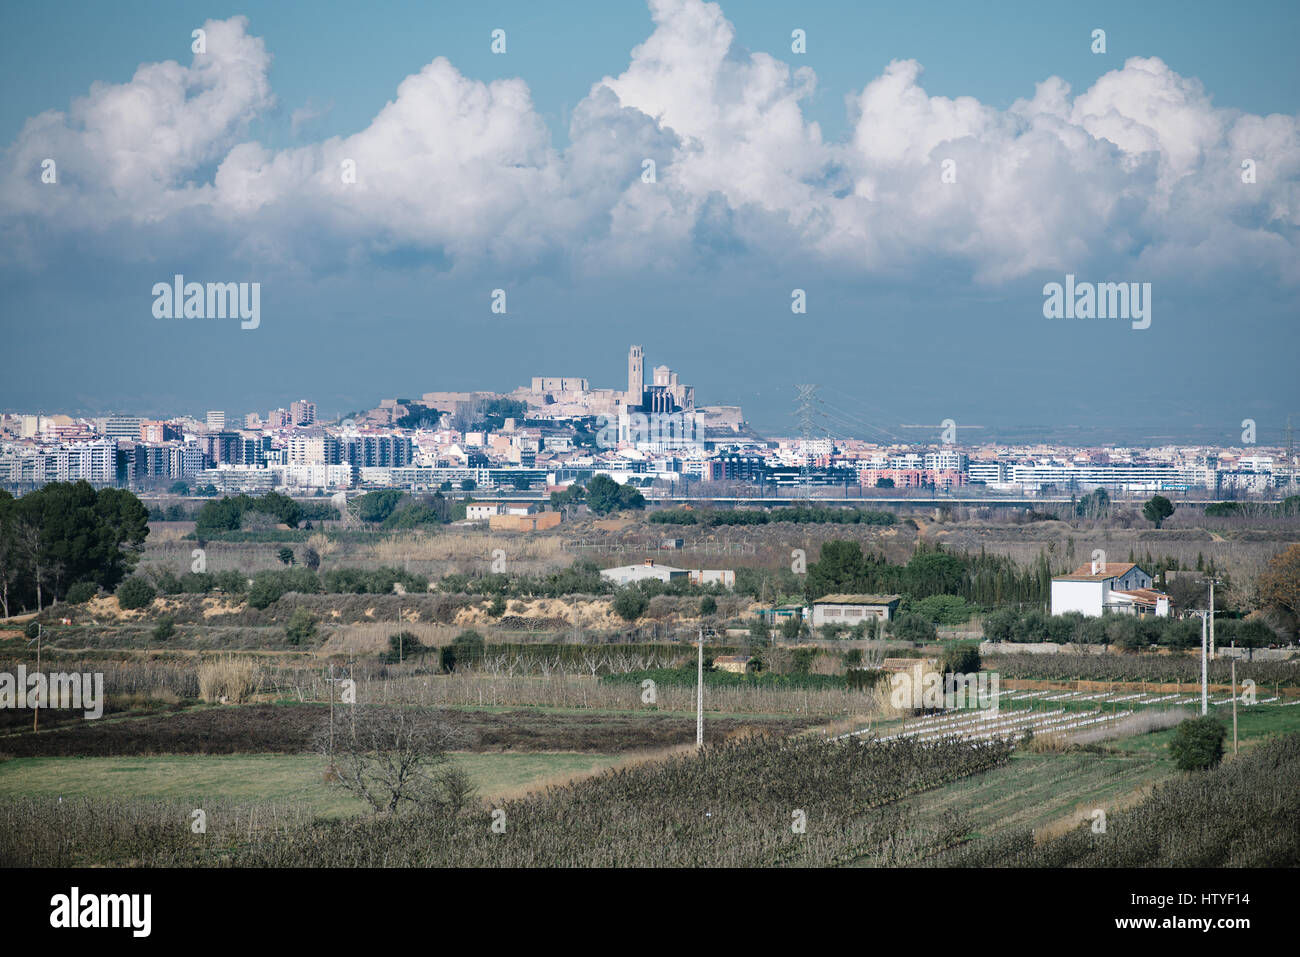 City skyline, Lleida, Spain Stock Photo